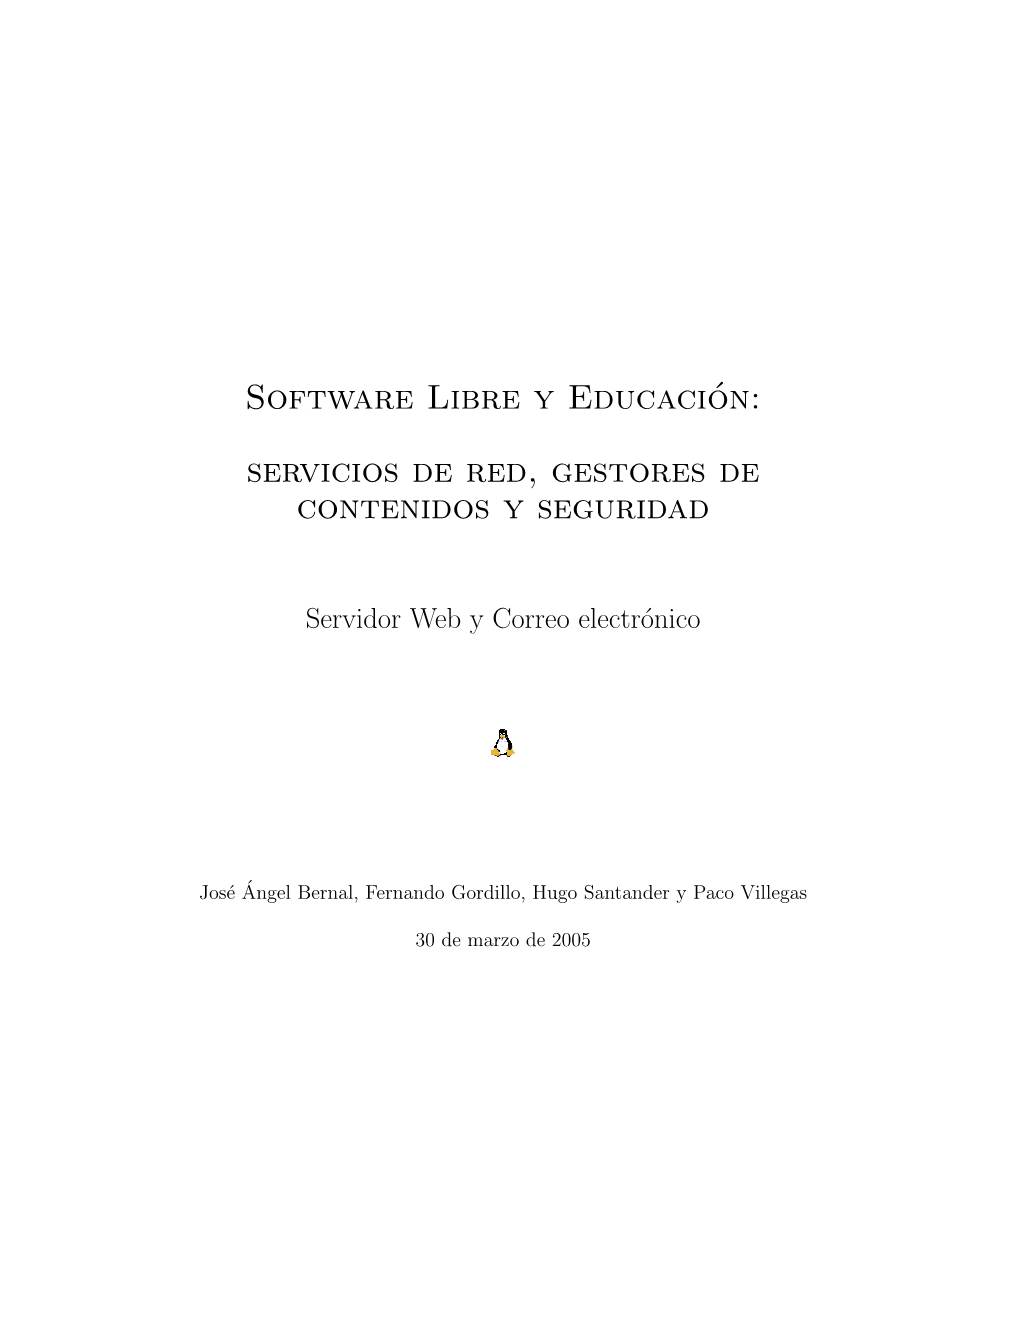 Software Libre Y Educación: Servicios De Red, Gestores De Contenidos Y